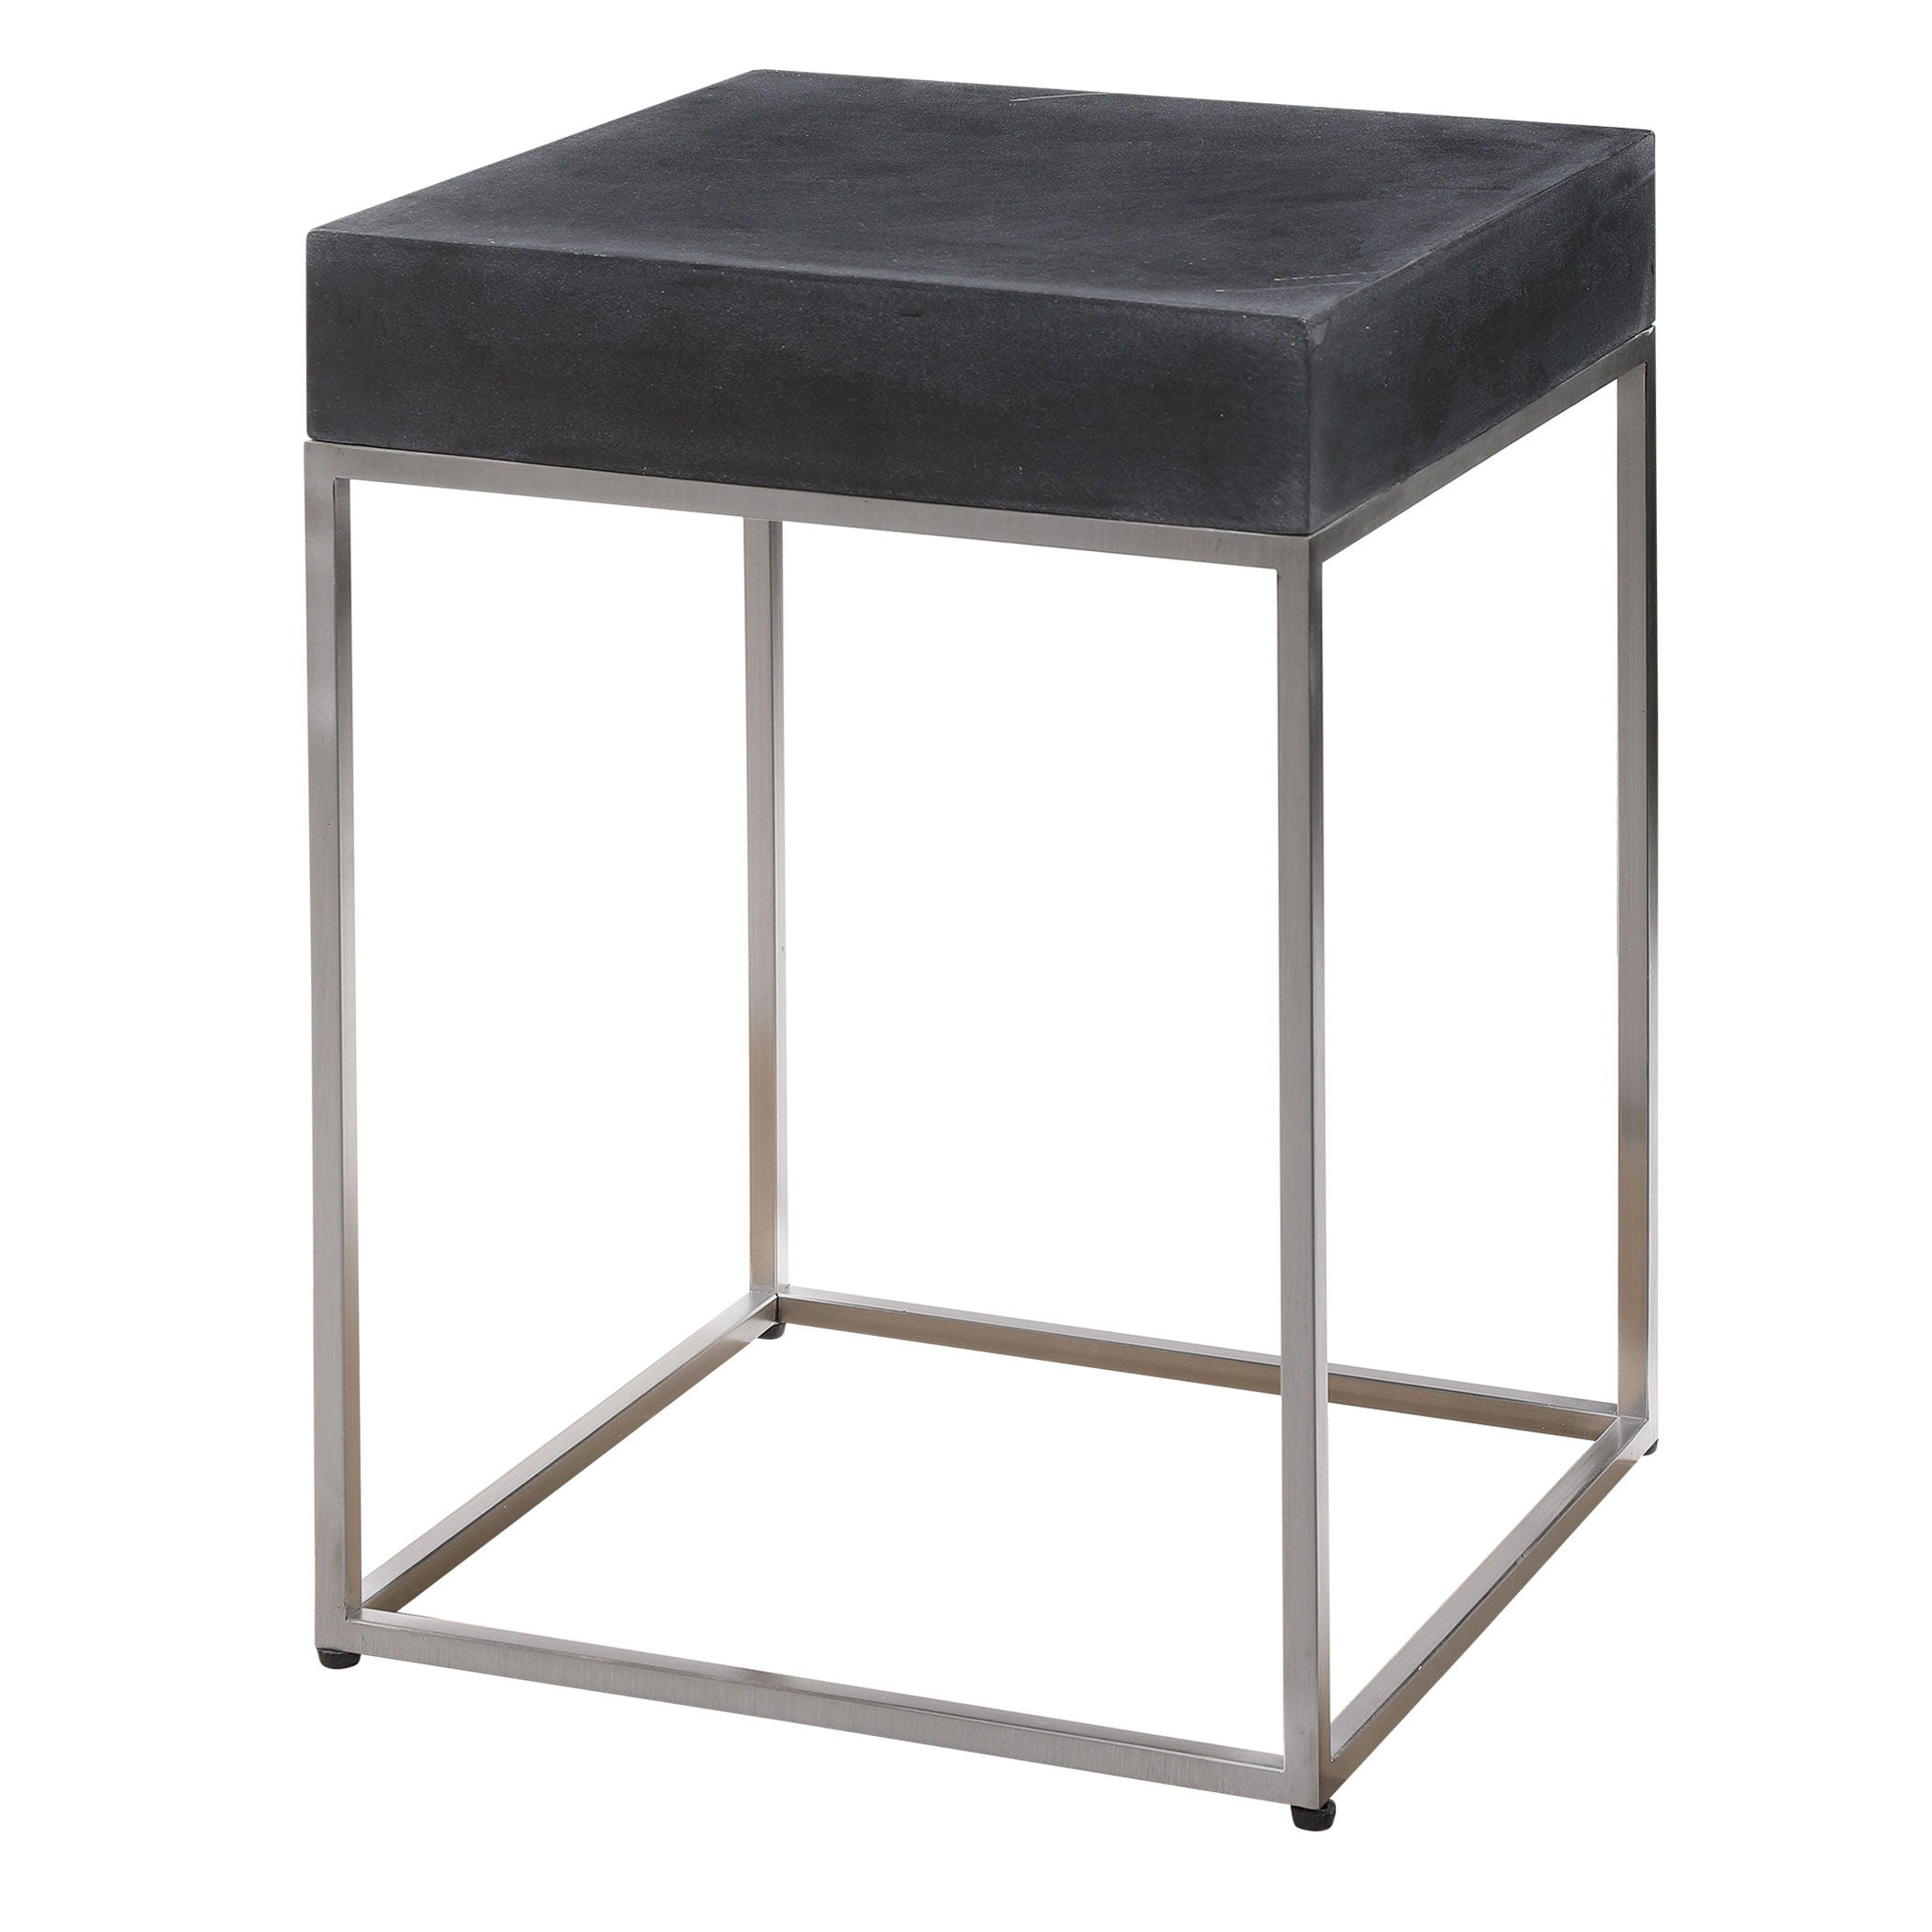 Jase - Concrete Accent Table - Black